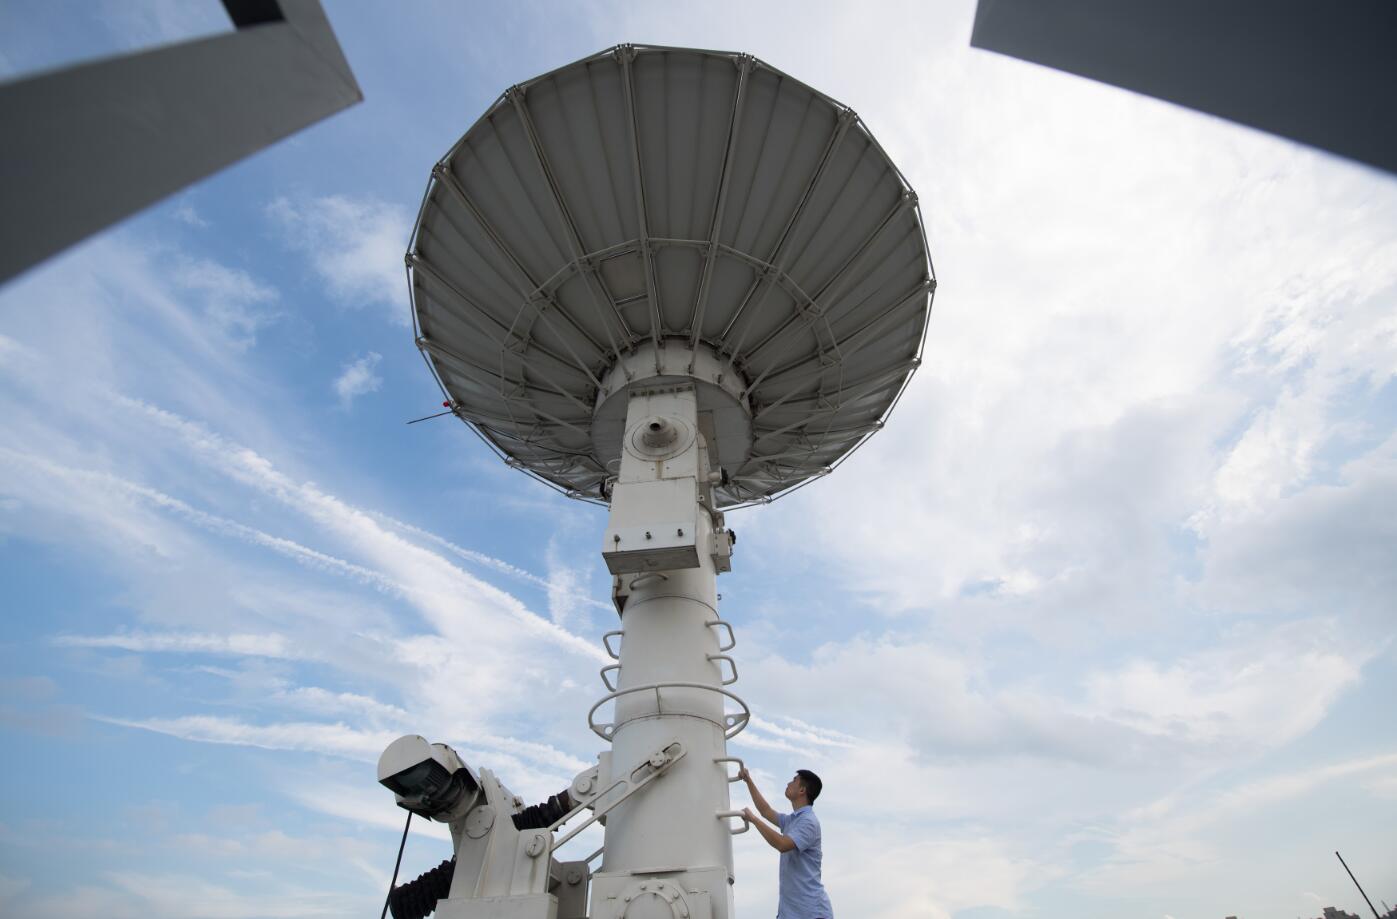 自然资源卫星遥感云服务平台